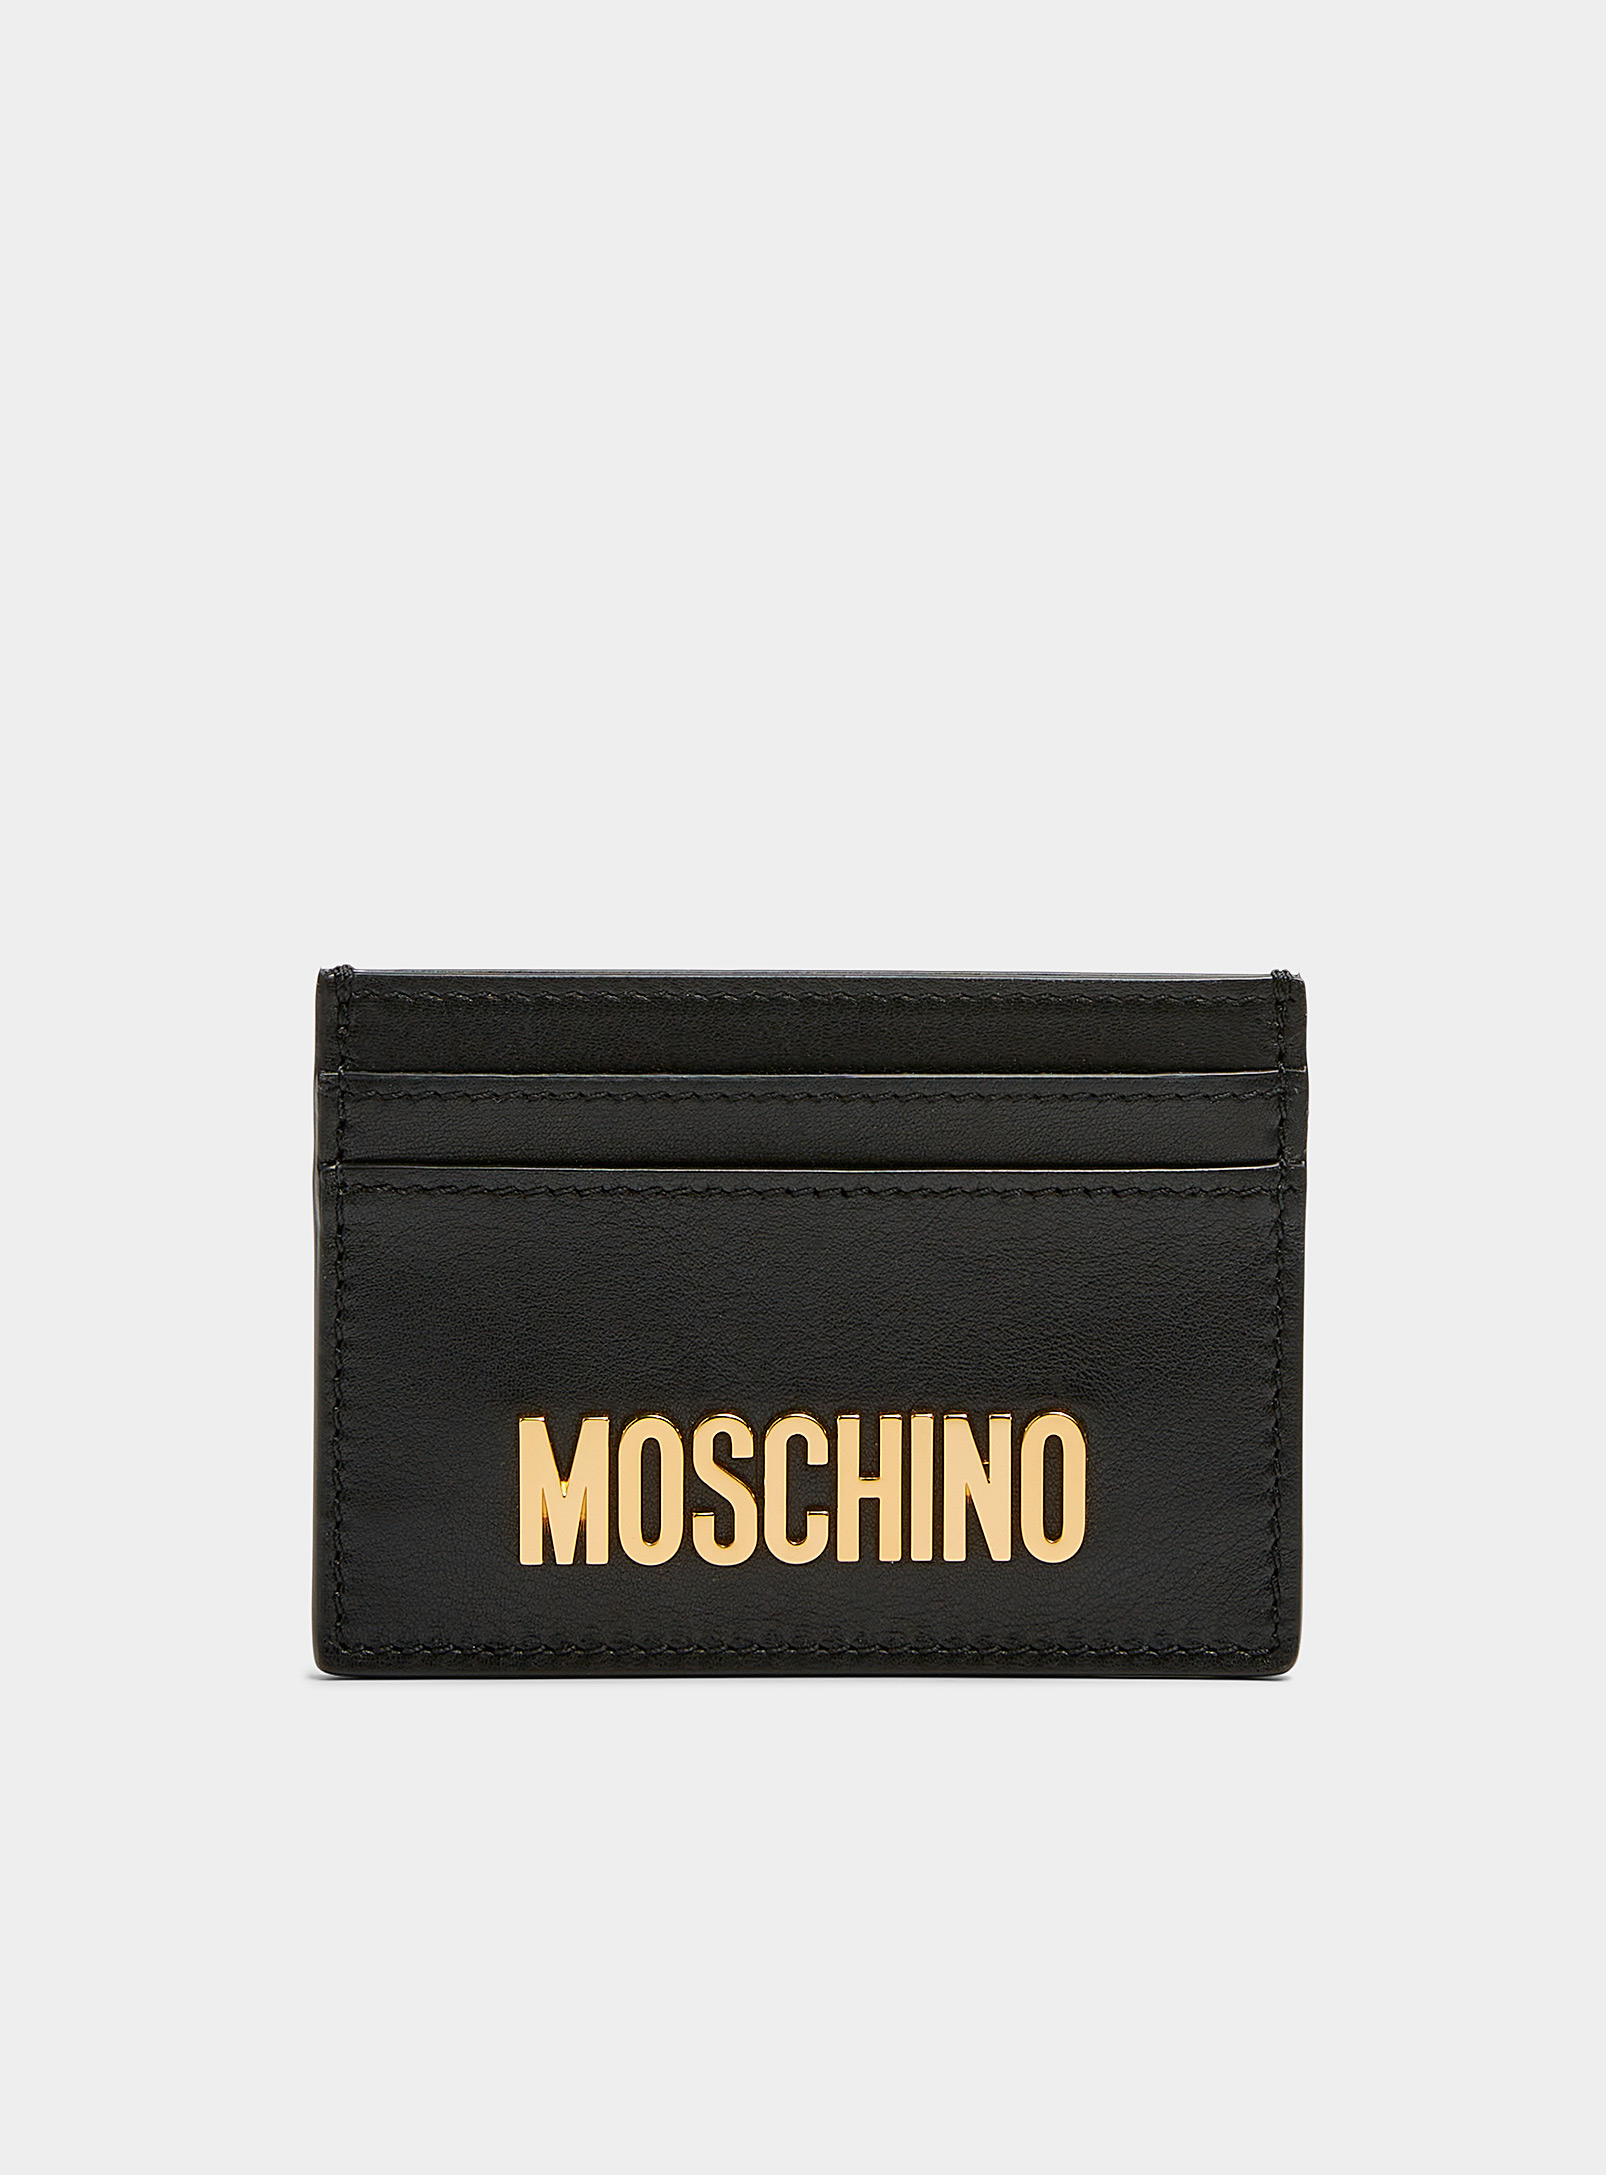 Moschino - Le porte-carte logo doré